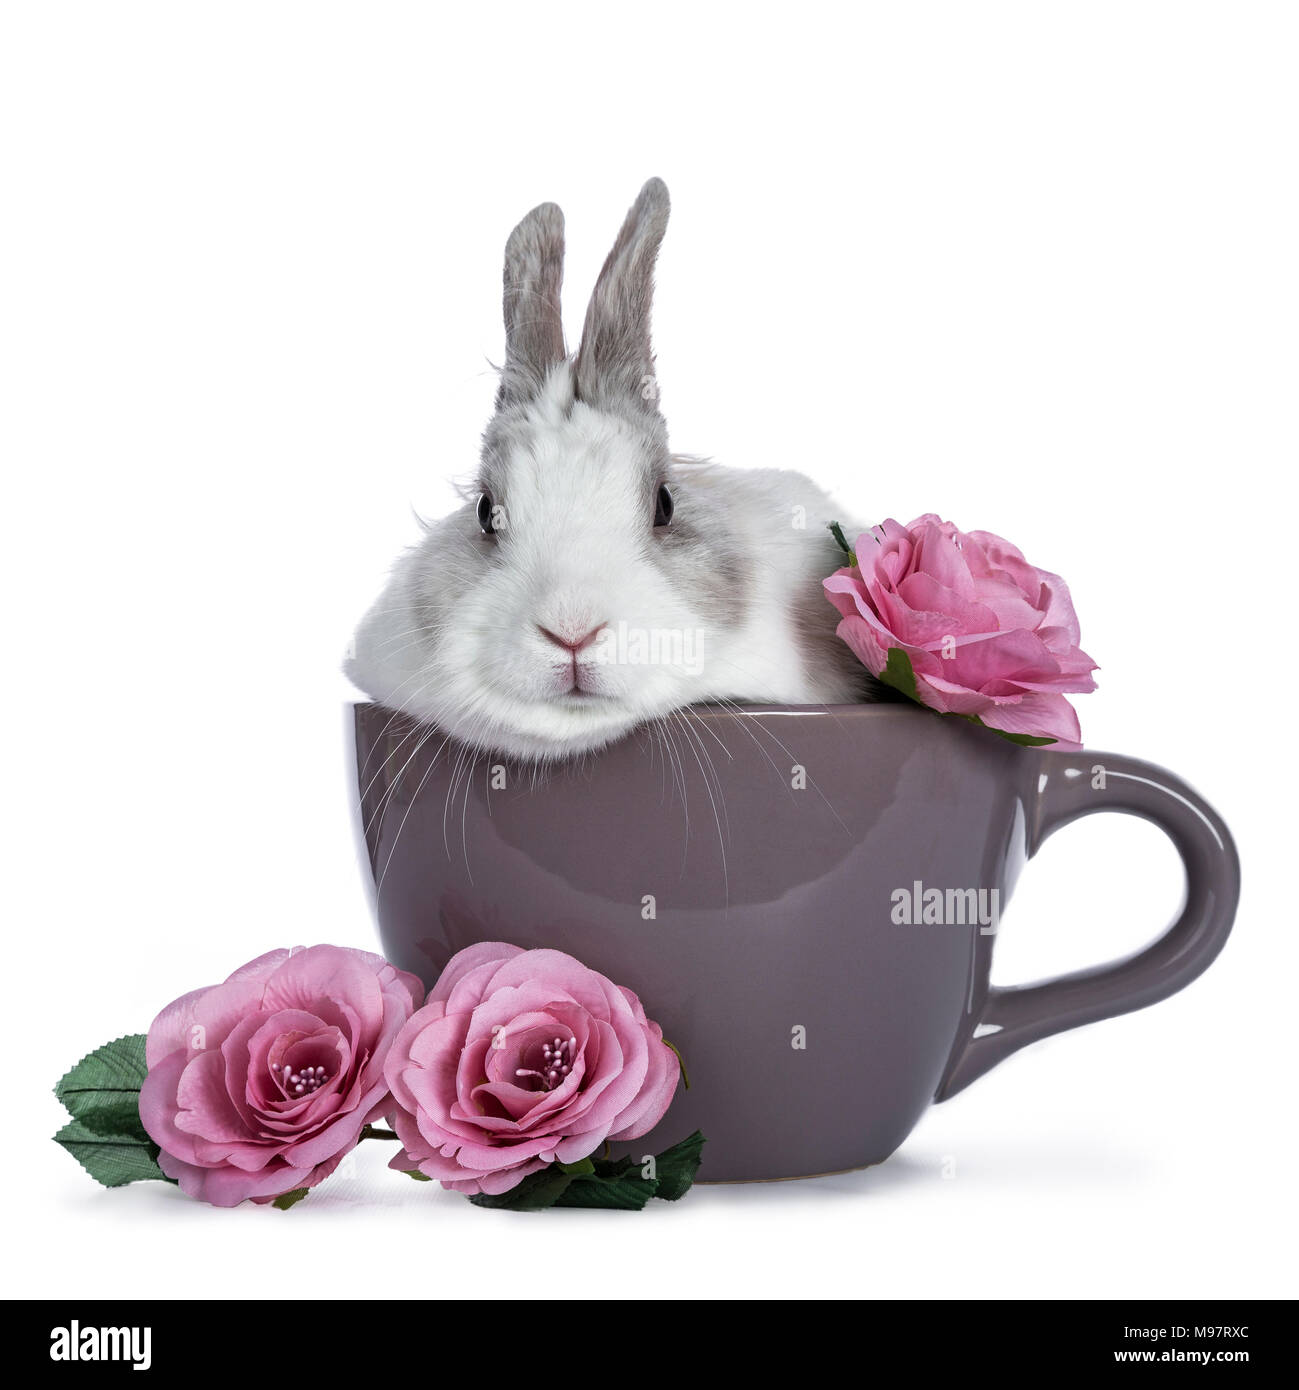 Carino bianco con coniglio grigio in seduta ceremic cup con romantiche rose rosa isolato su sfondo bianco Foto Stock